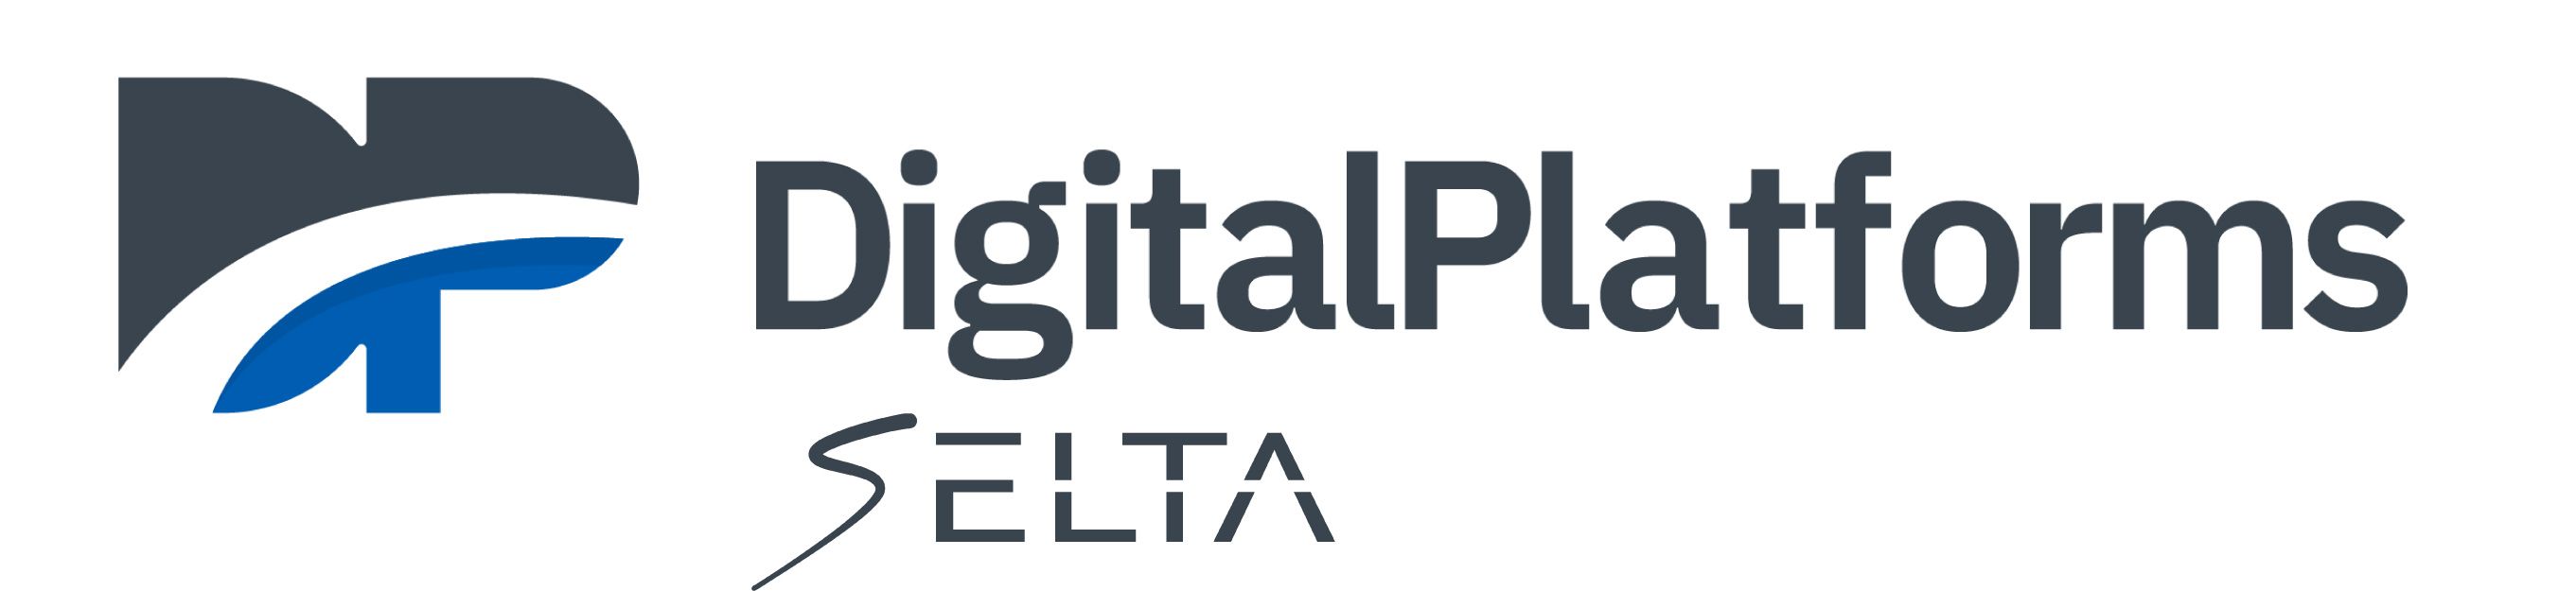 DP DigitalPlatforms Selta